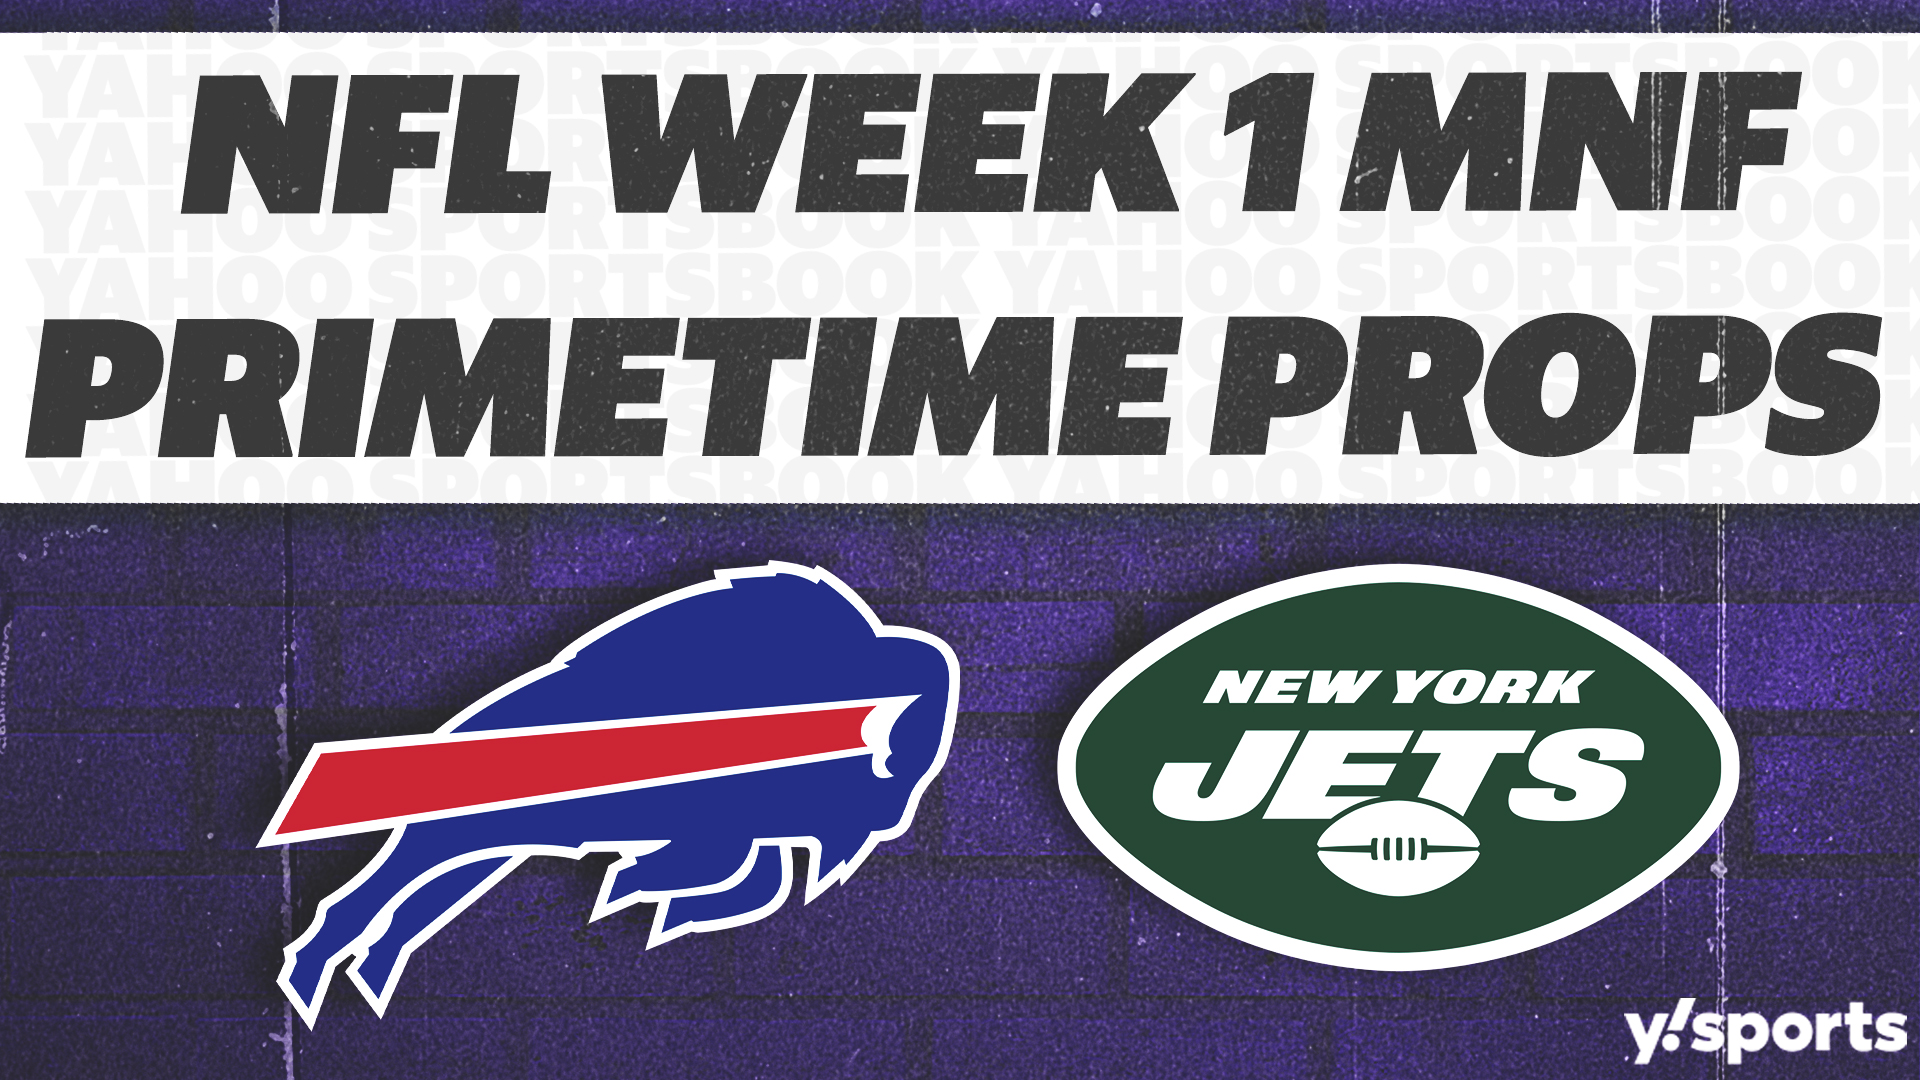 Bills vs. Jets picks: Best player prop bets for Week 1 NFL Monday